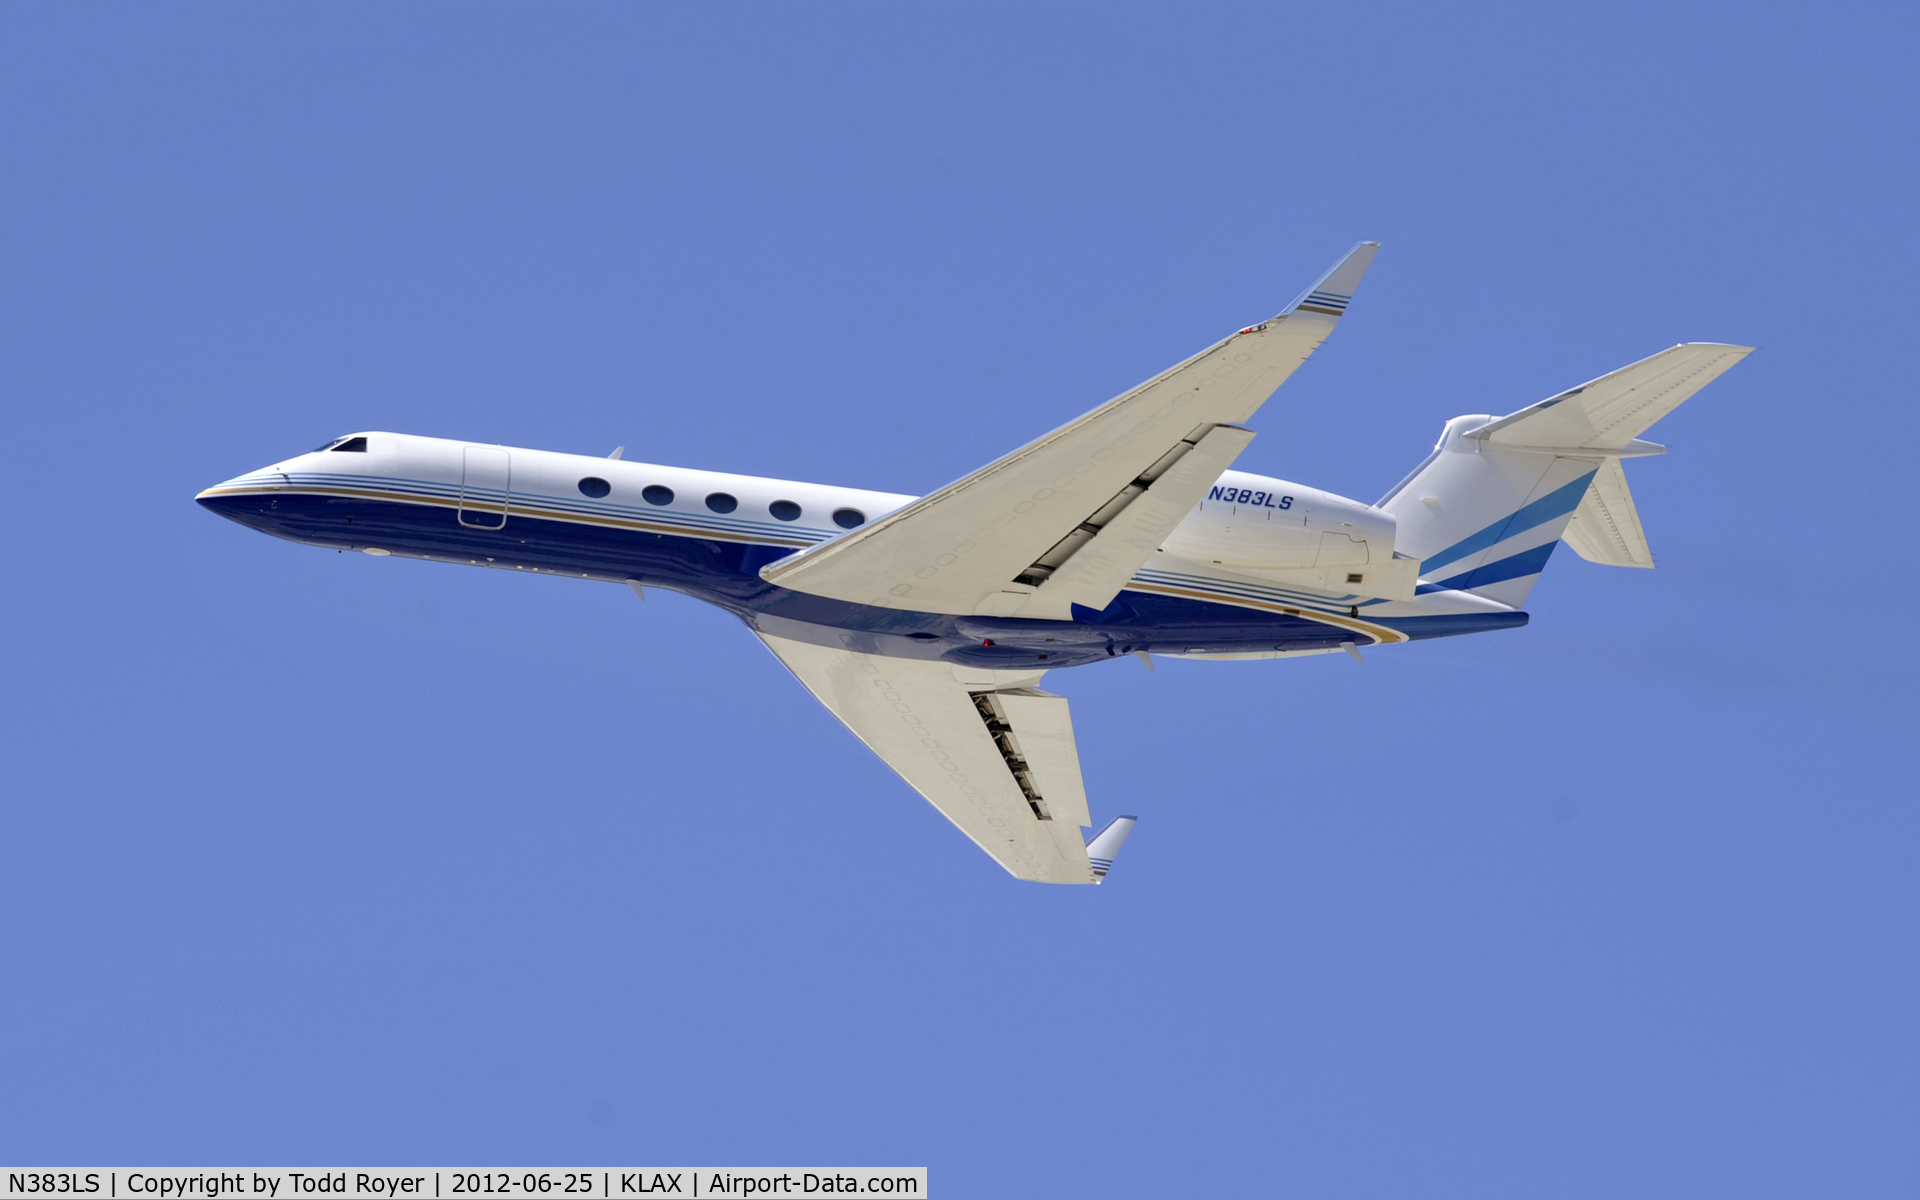 N383LS, 1998 Gulfstream Aerospace G-IV C/N 544, Departing LAX on 25R